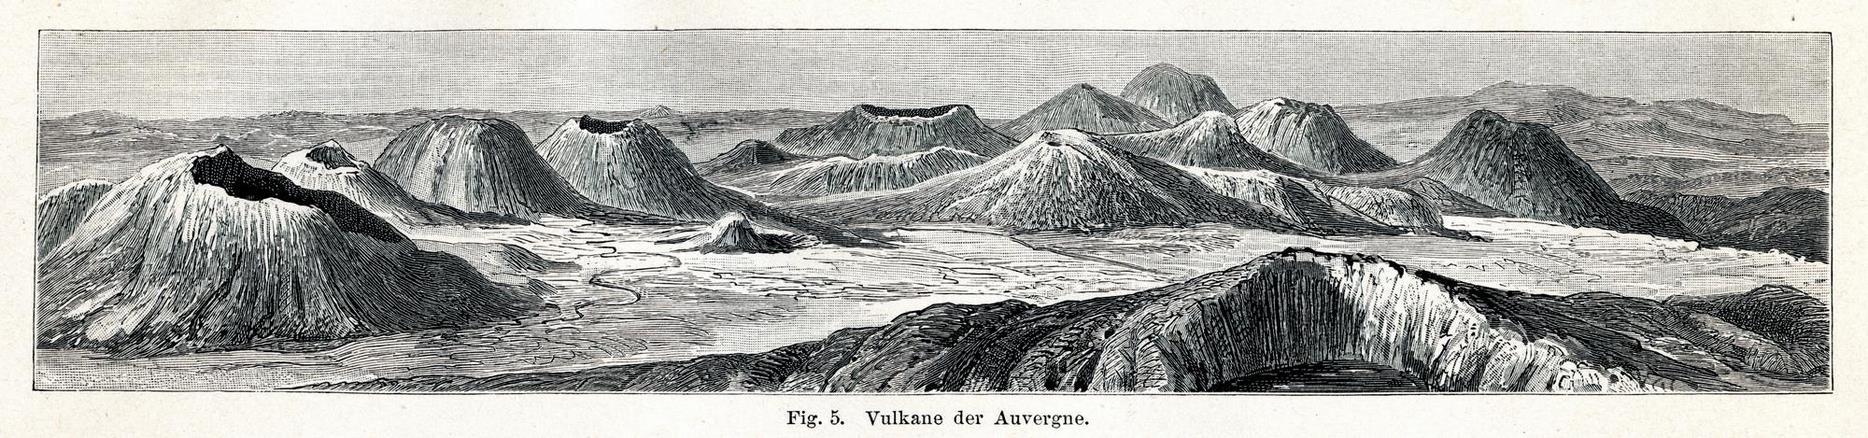 Les Voilcans d'Auvergne - dessins d'un panorama